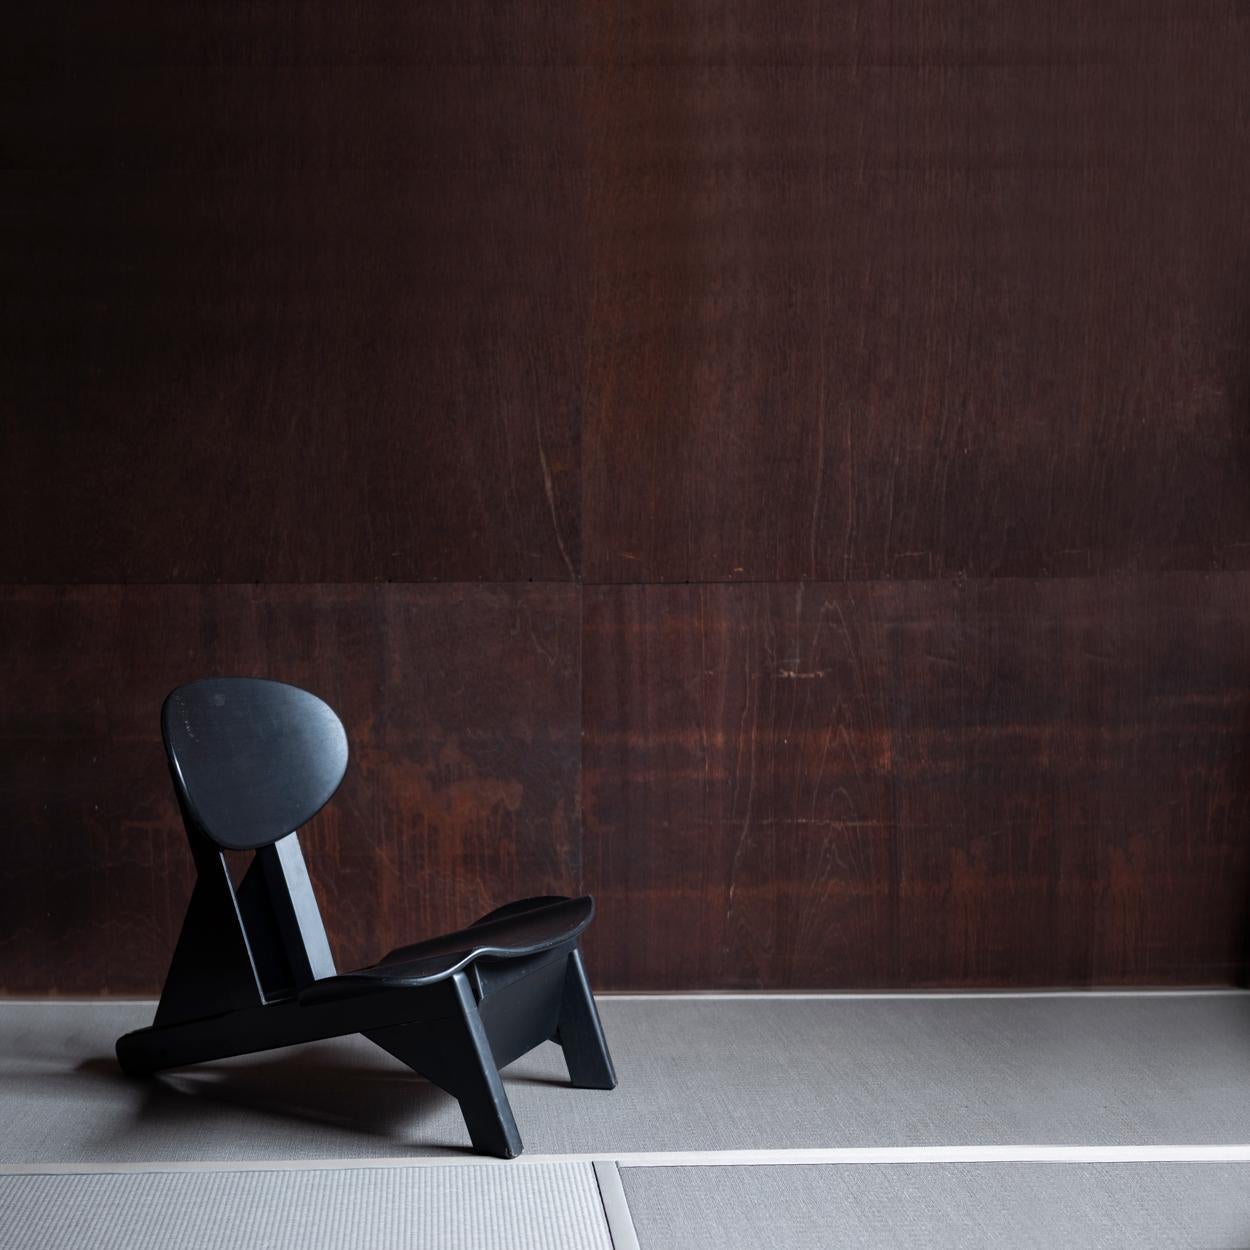 Rare et unique chaise basse sculpturale en noir conçue par le designer français Alain Gaubert.
La chaise peut être utilisée dans trois positions différentes : s'asseoir sur la chaise normalement comme une chaise basse, s'asseoir sur le dossier pour